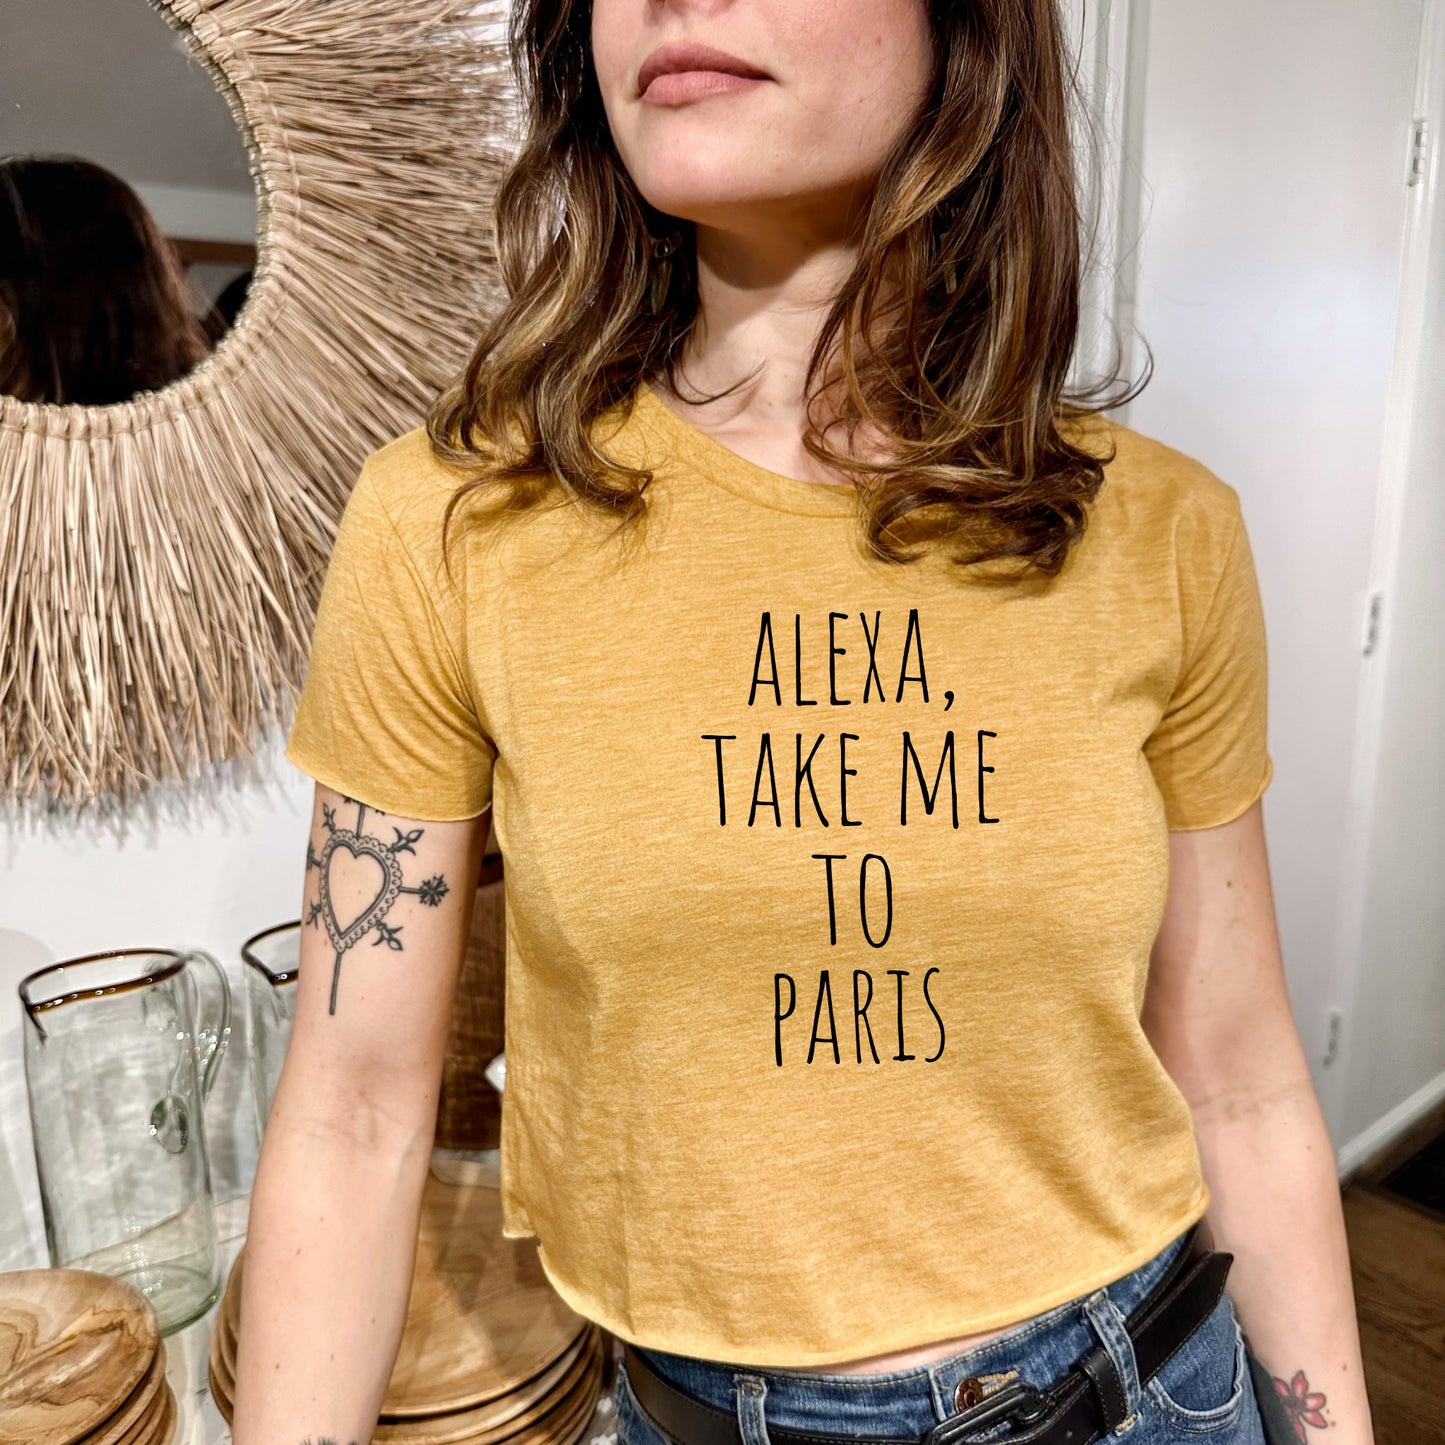 Alexa, Take Me To Paris - Women's Crop Tee - Heather Gray or Gold